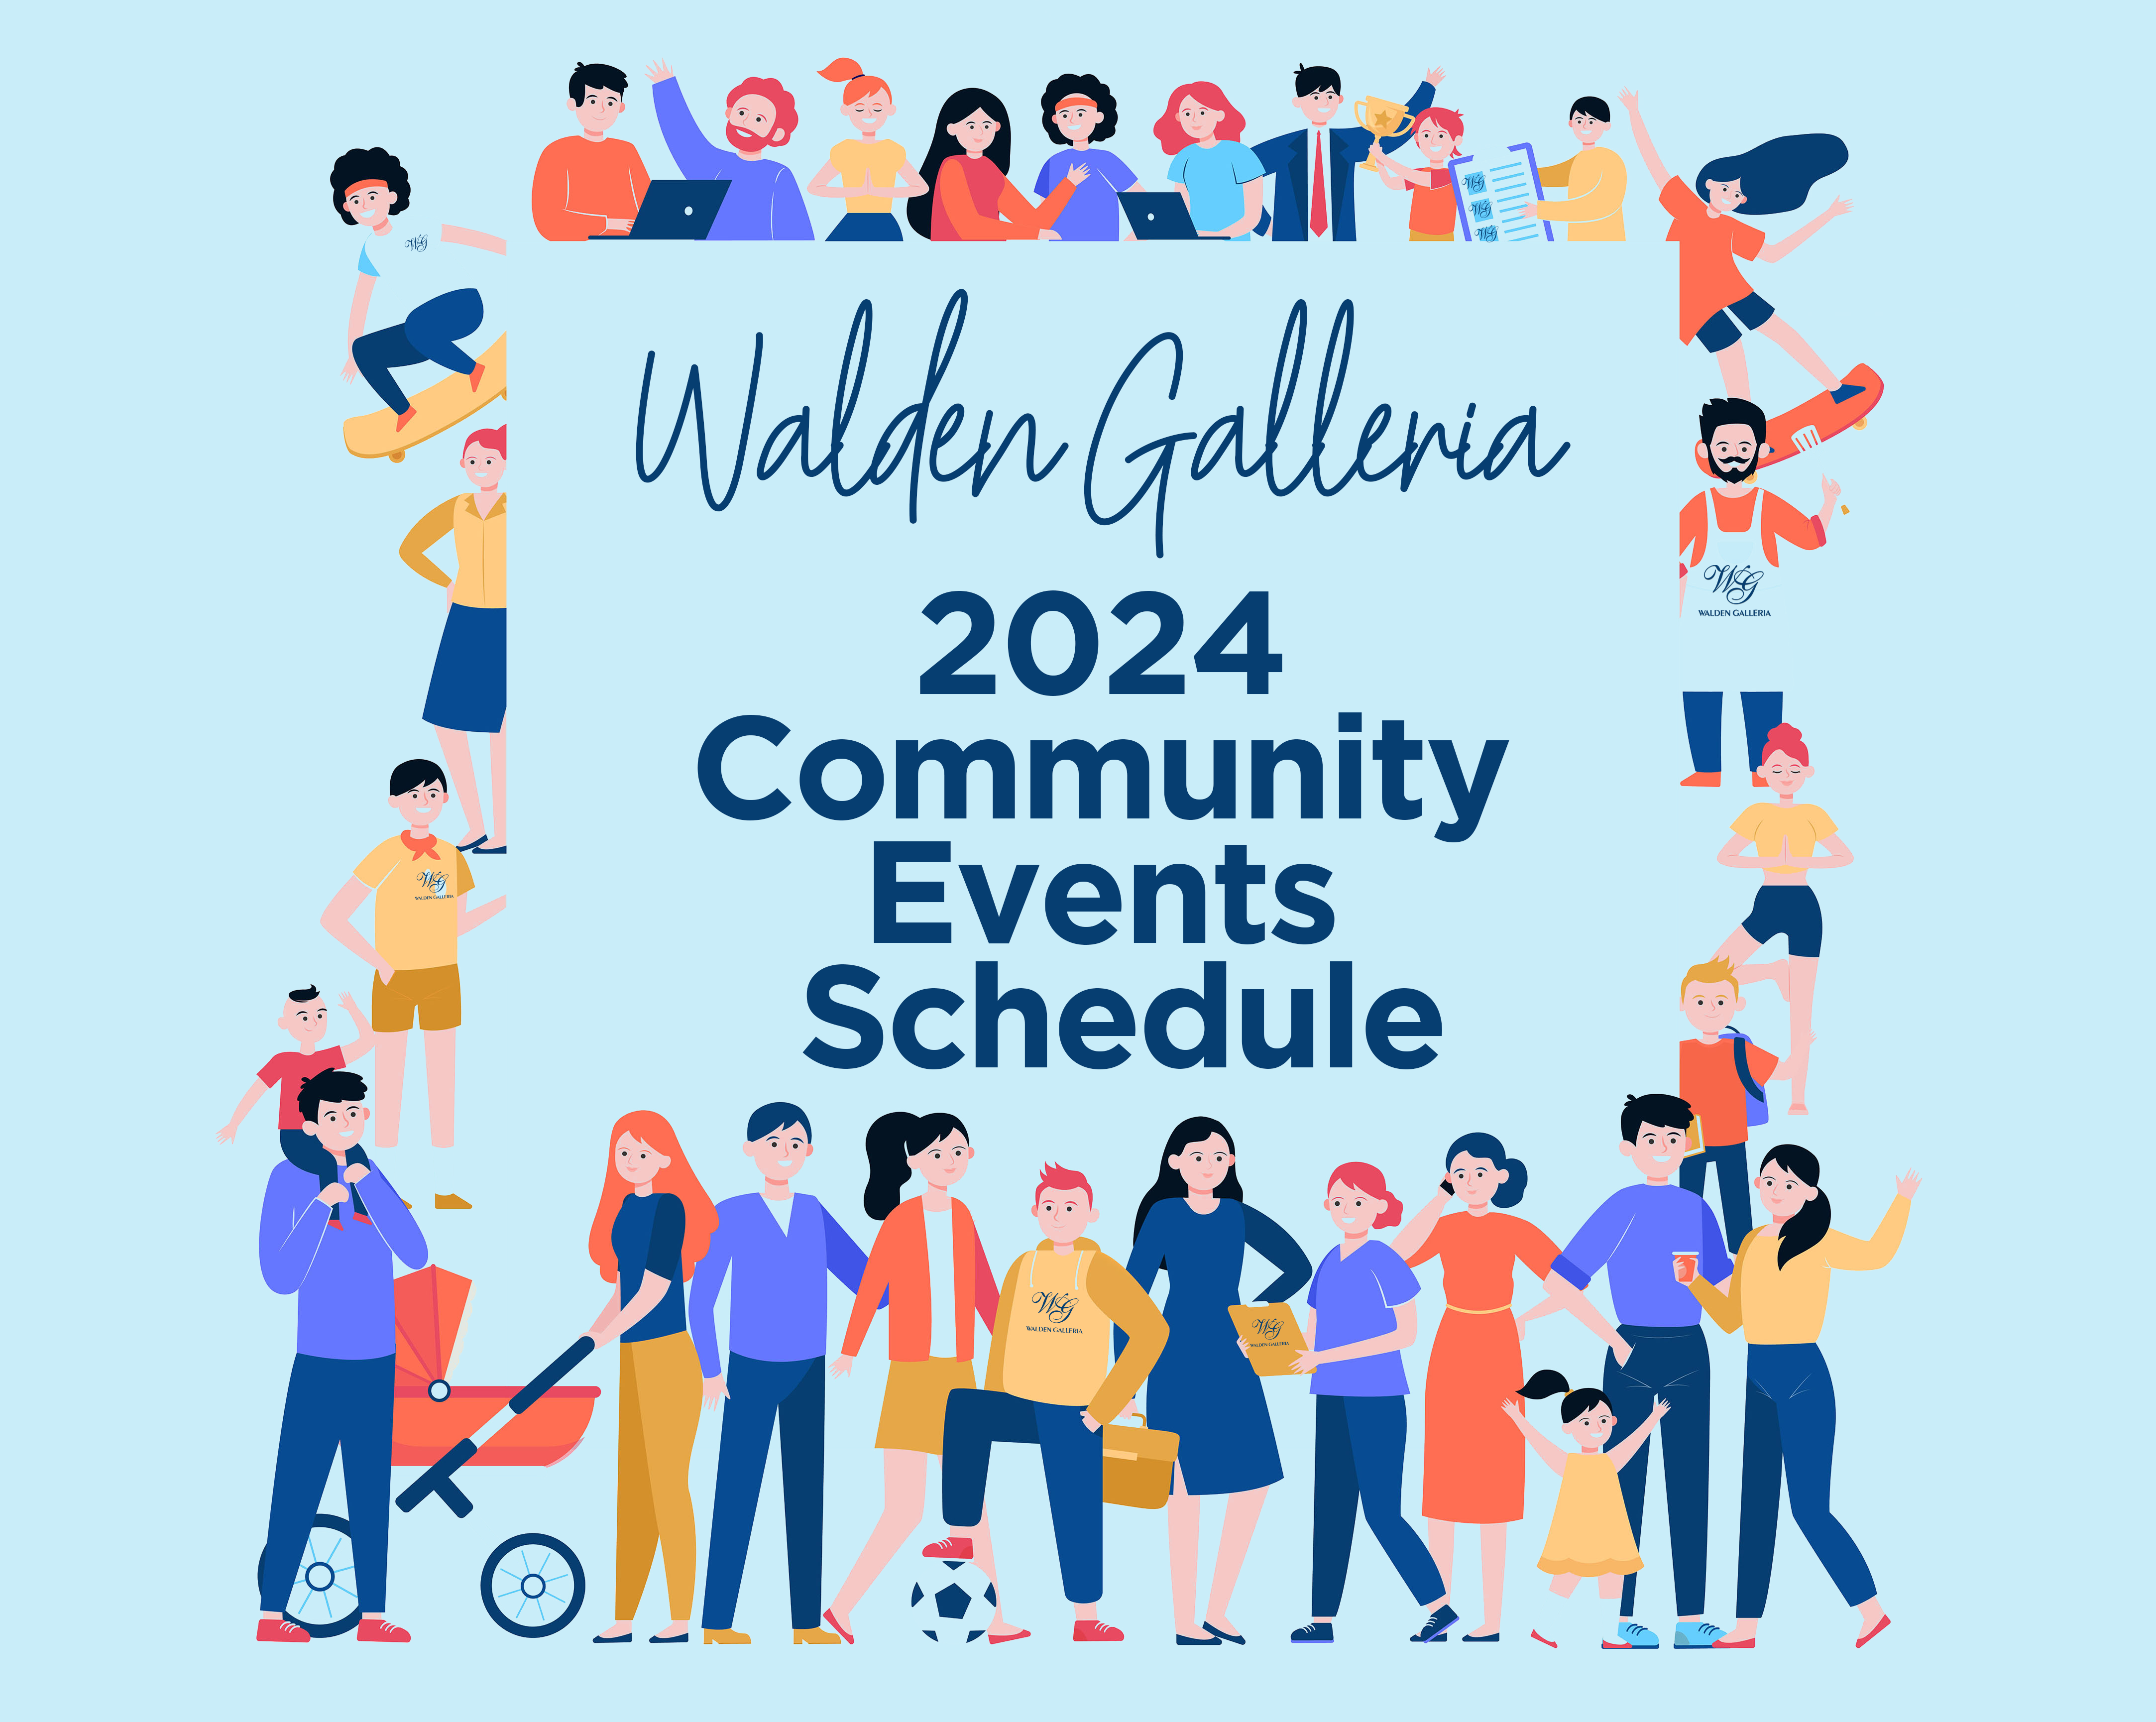 WG 2024 Community Events Schedule Website Image